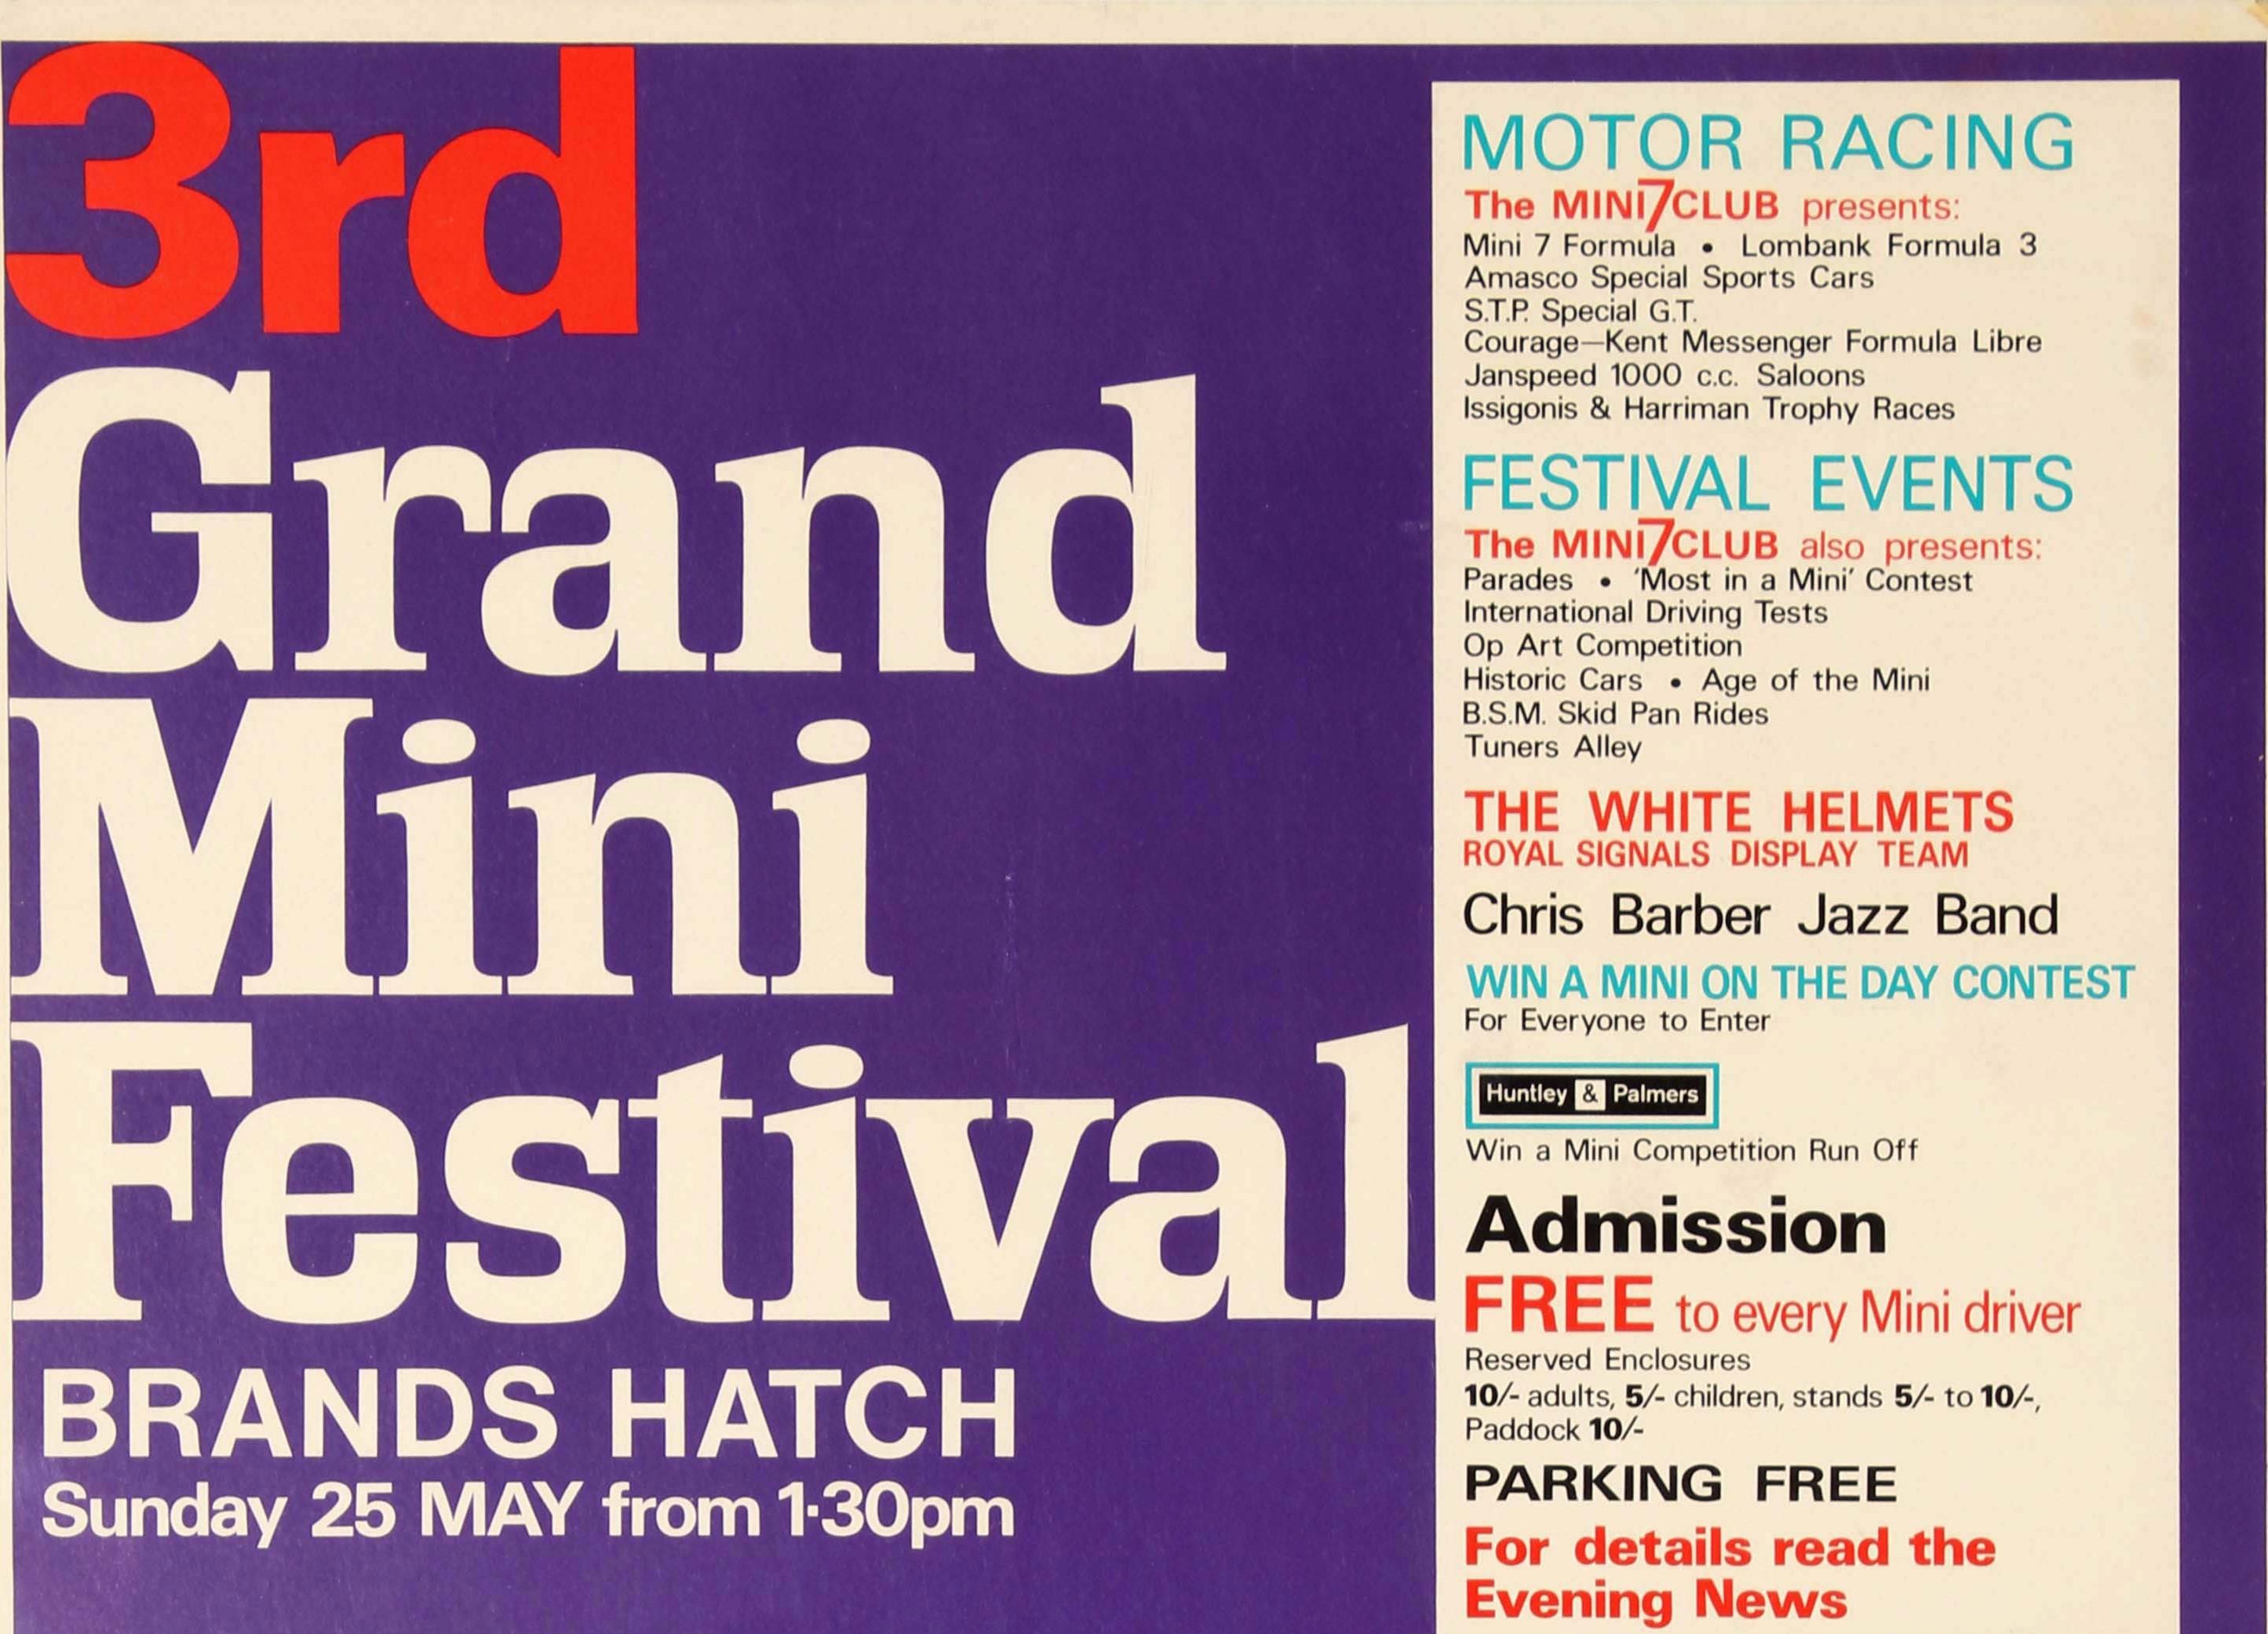 Original-Werbeplakat für das 3. Grand Mini Festival, das am Sonntag, den 25. Mai ab 13.30 Uhr auf der Rennstrecke von Brands Hatch stattfindet. Buntes Sixties-Design mit Mini-Autos und ihren Besitzern in verschiedenen Stilen - der Art-Mini in